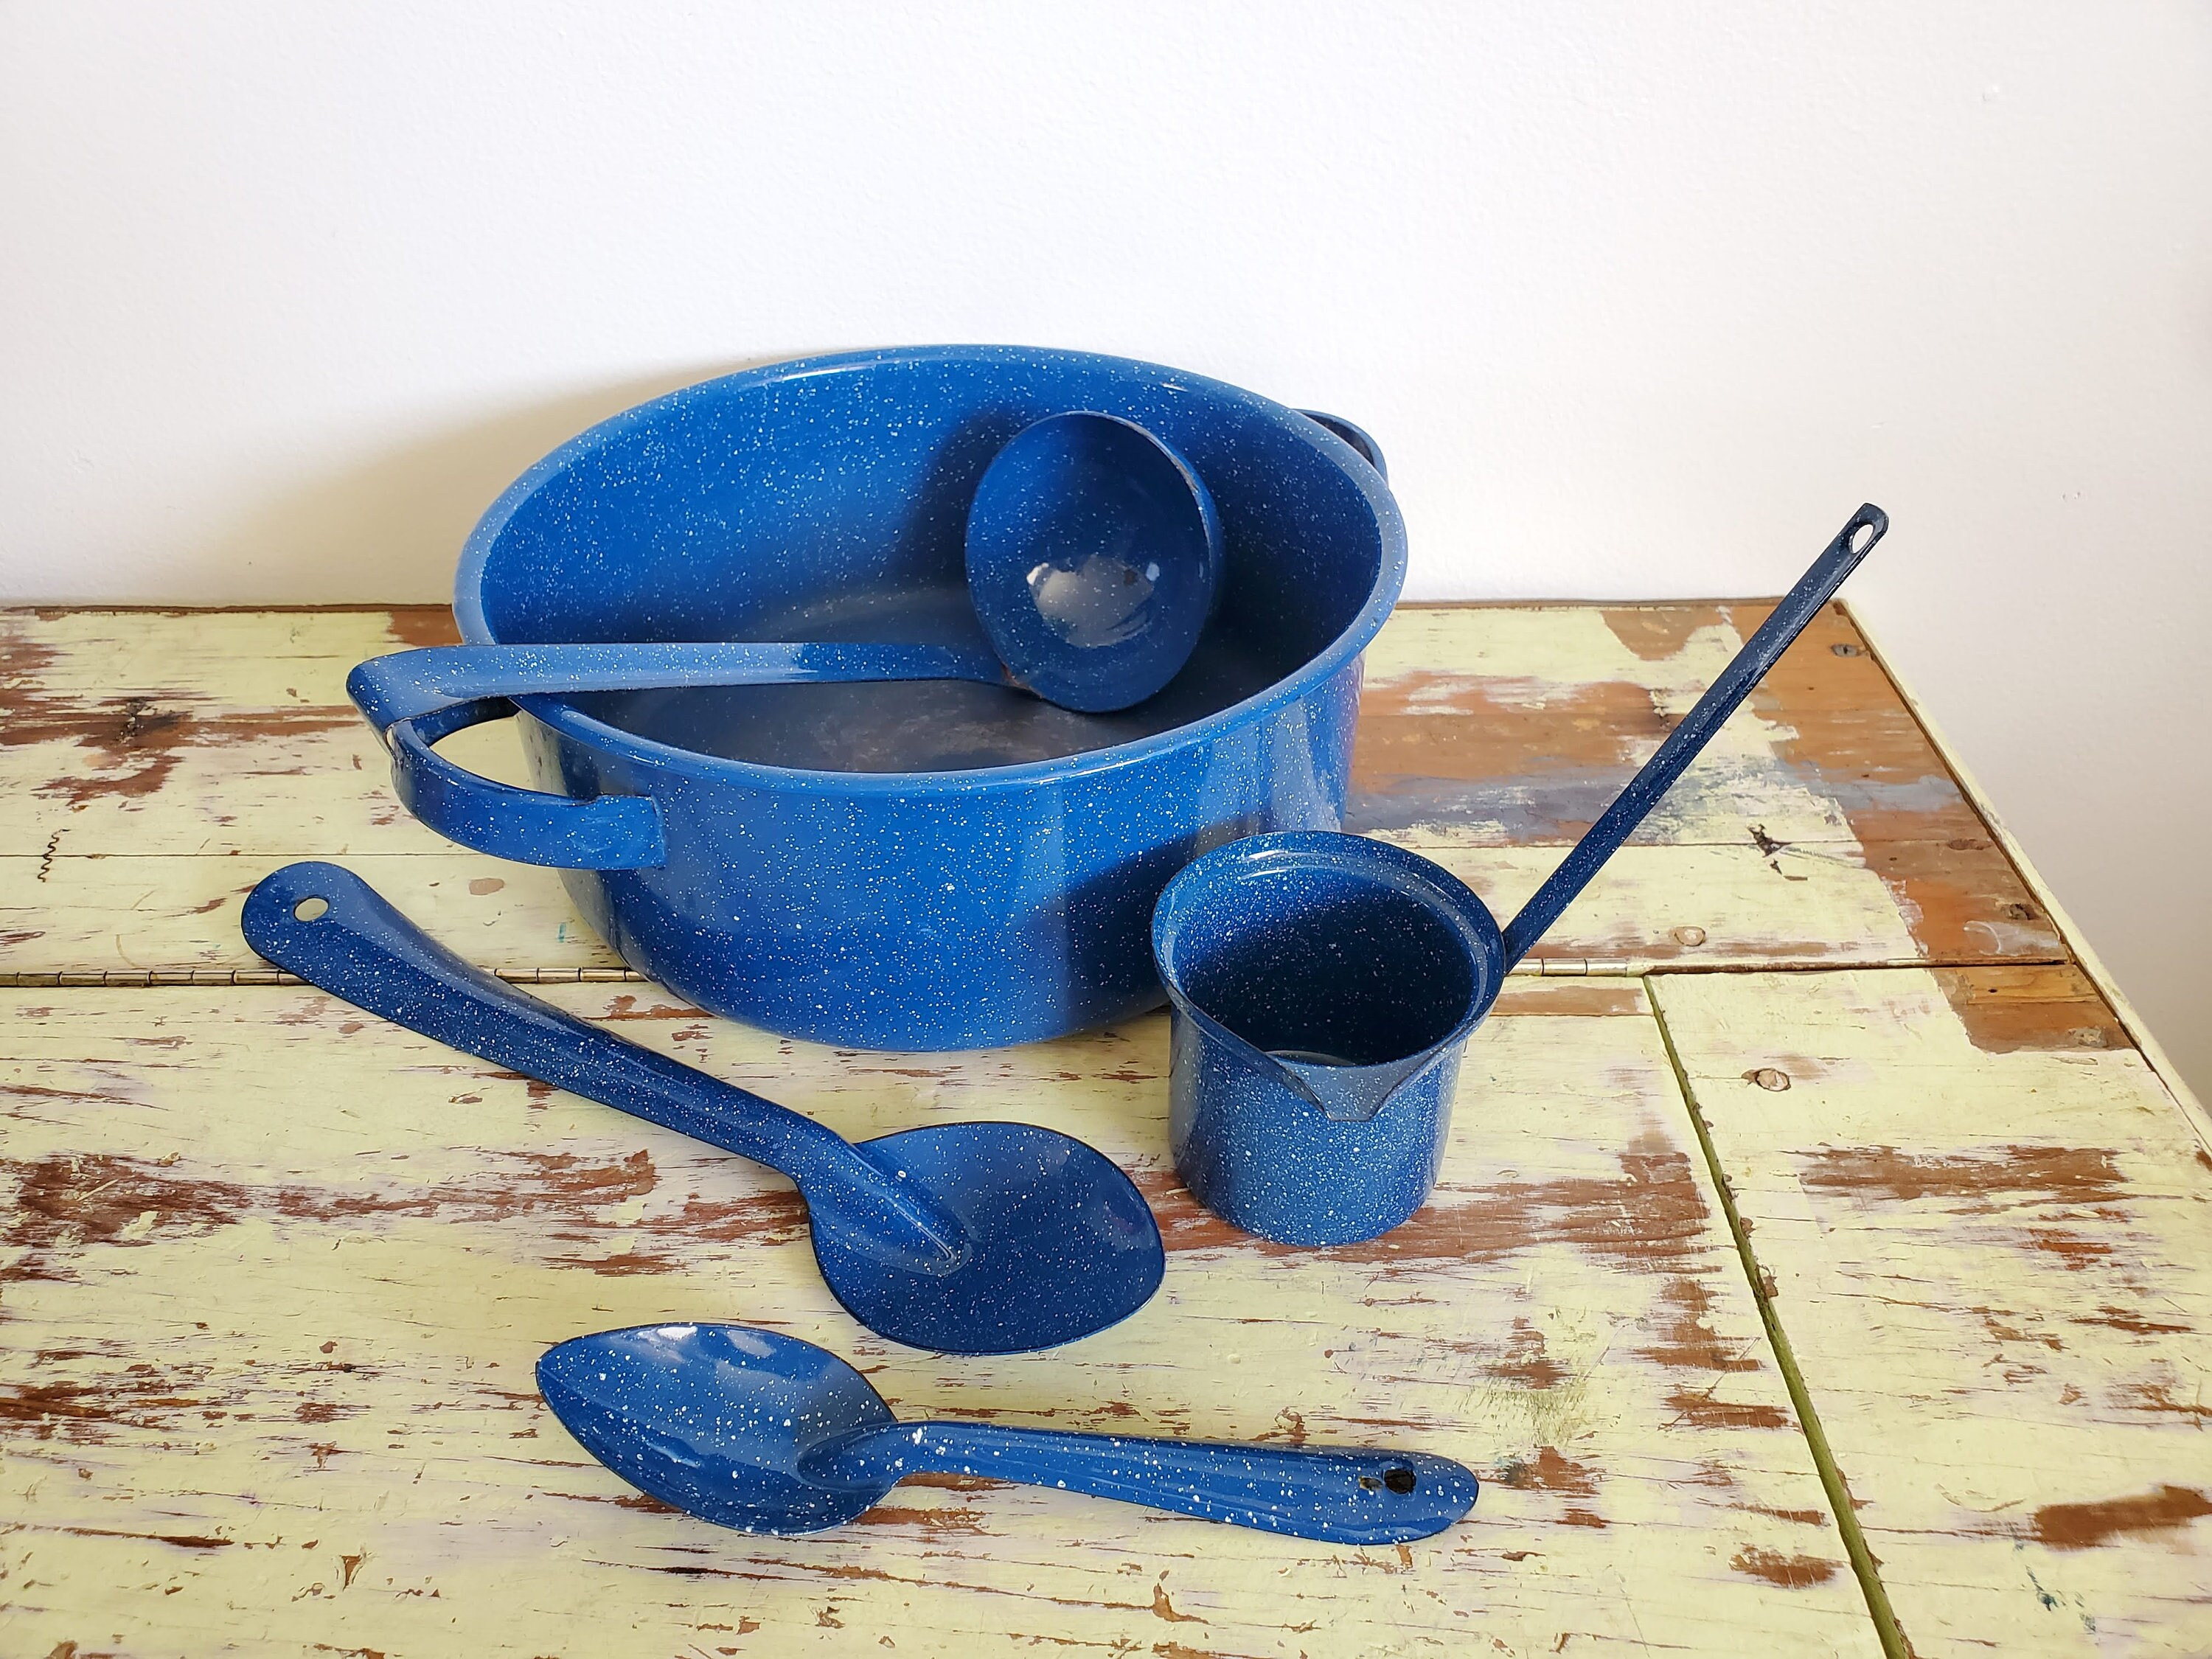 Vtg Lot of 4 Blue Speckled Pots Pans Enamelware Metal Camp Kitchen